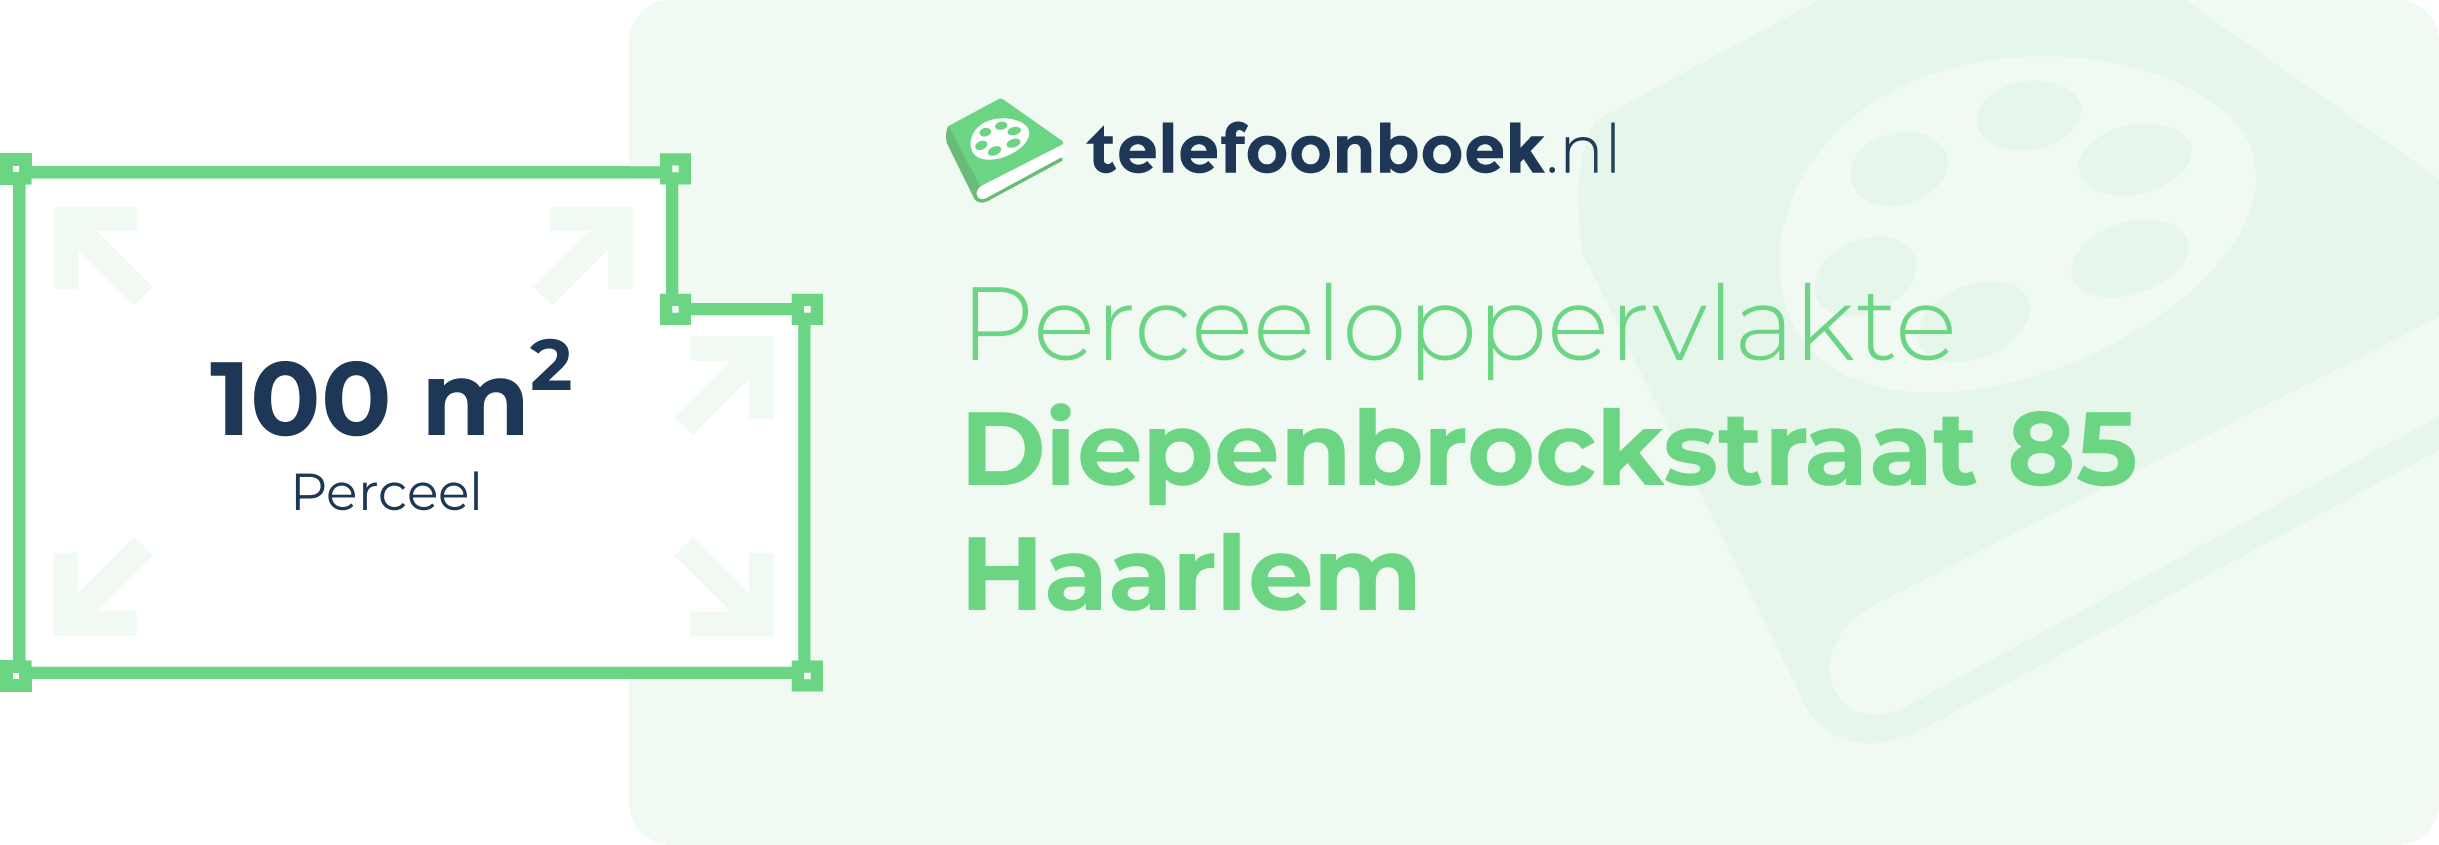 Perceeloppervlakte Diepenbrockstraat 85 Haarlem